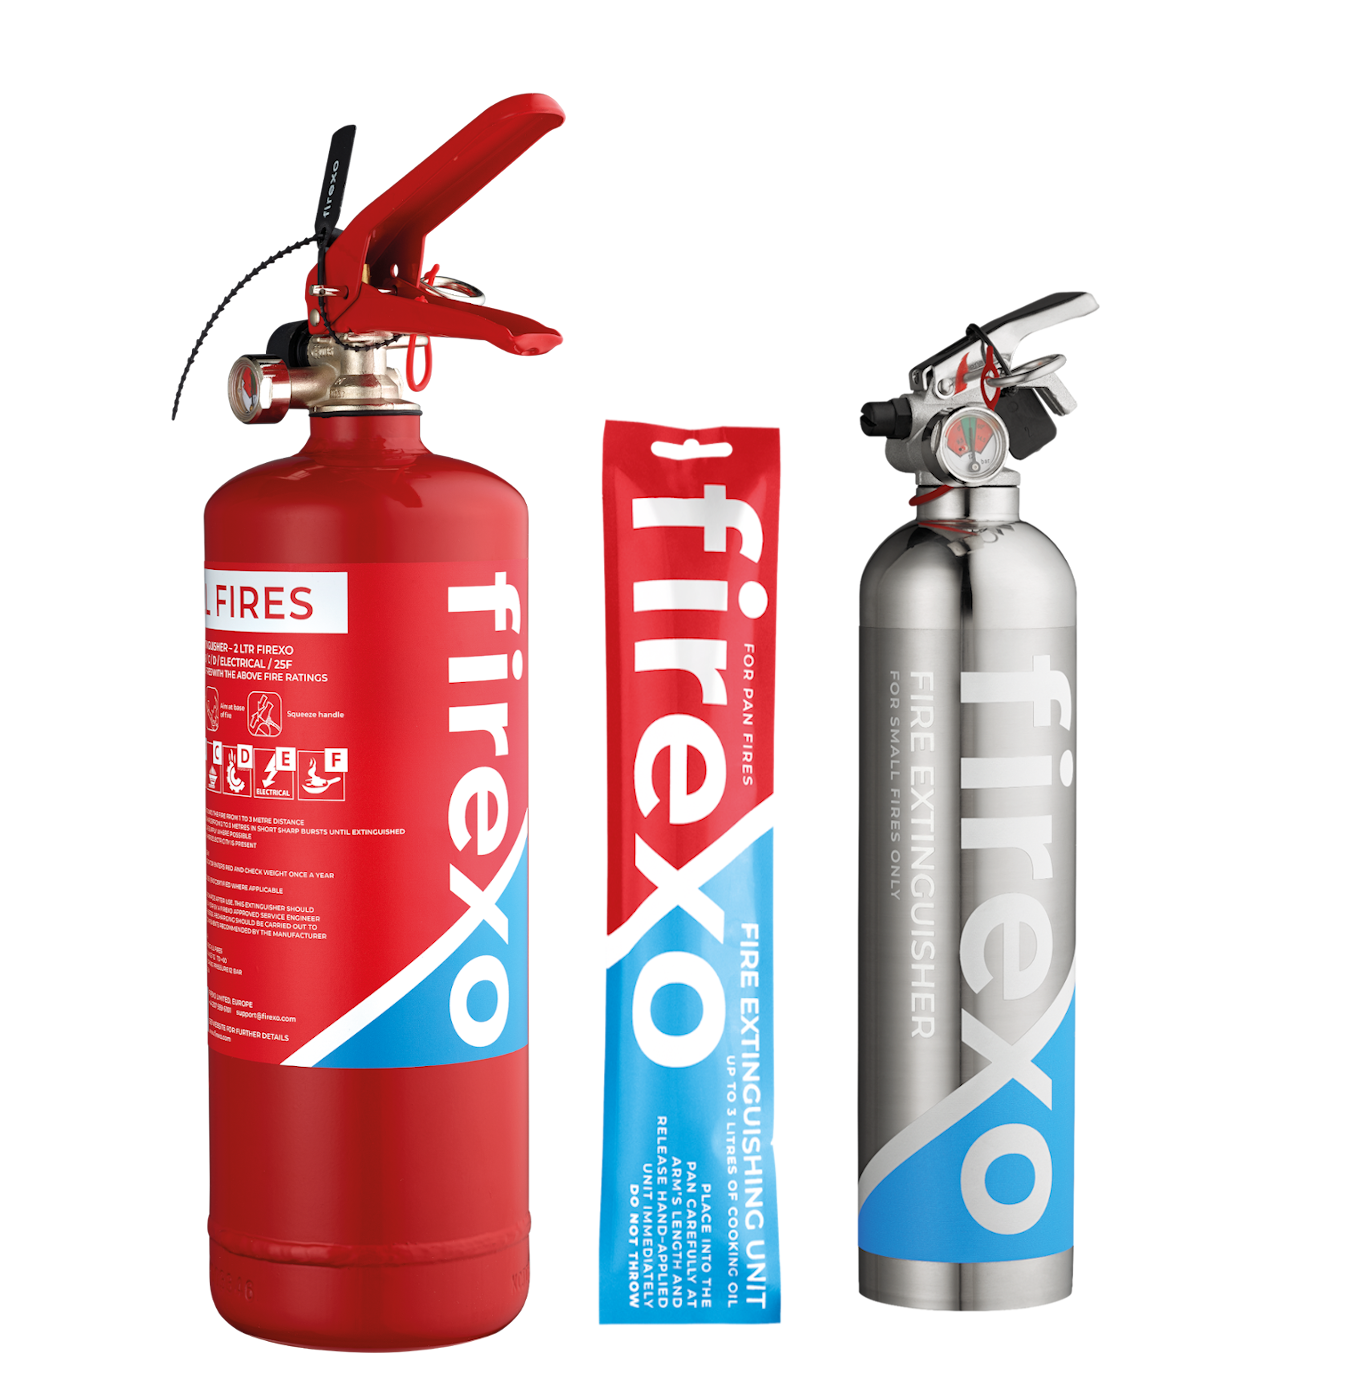 Fire Extinguishers Explained